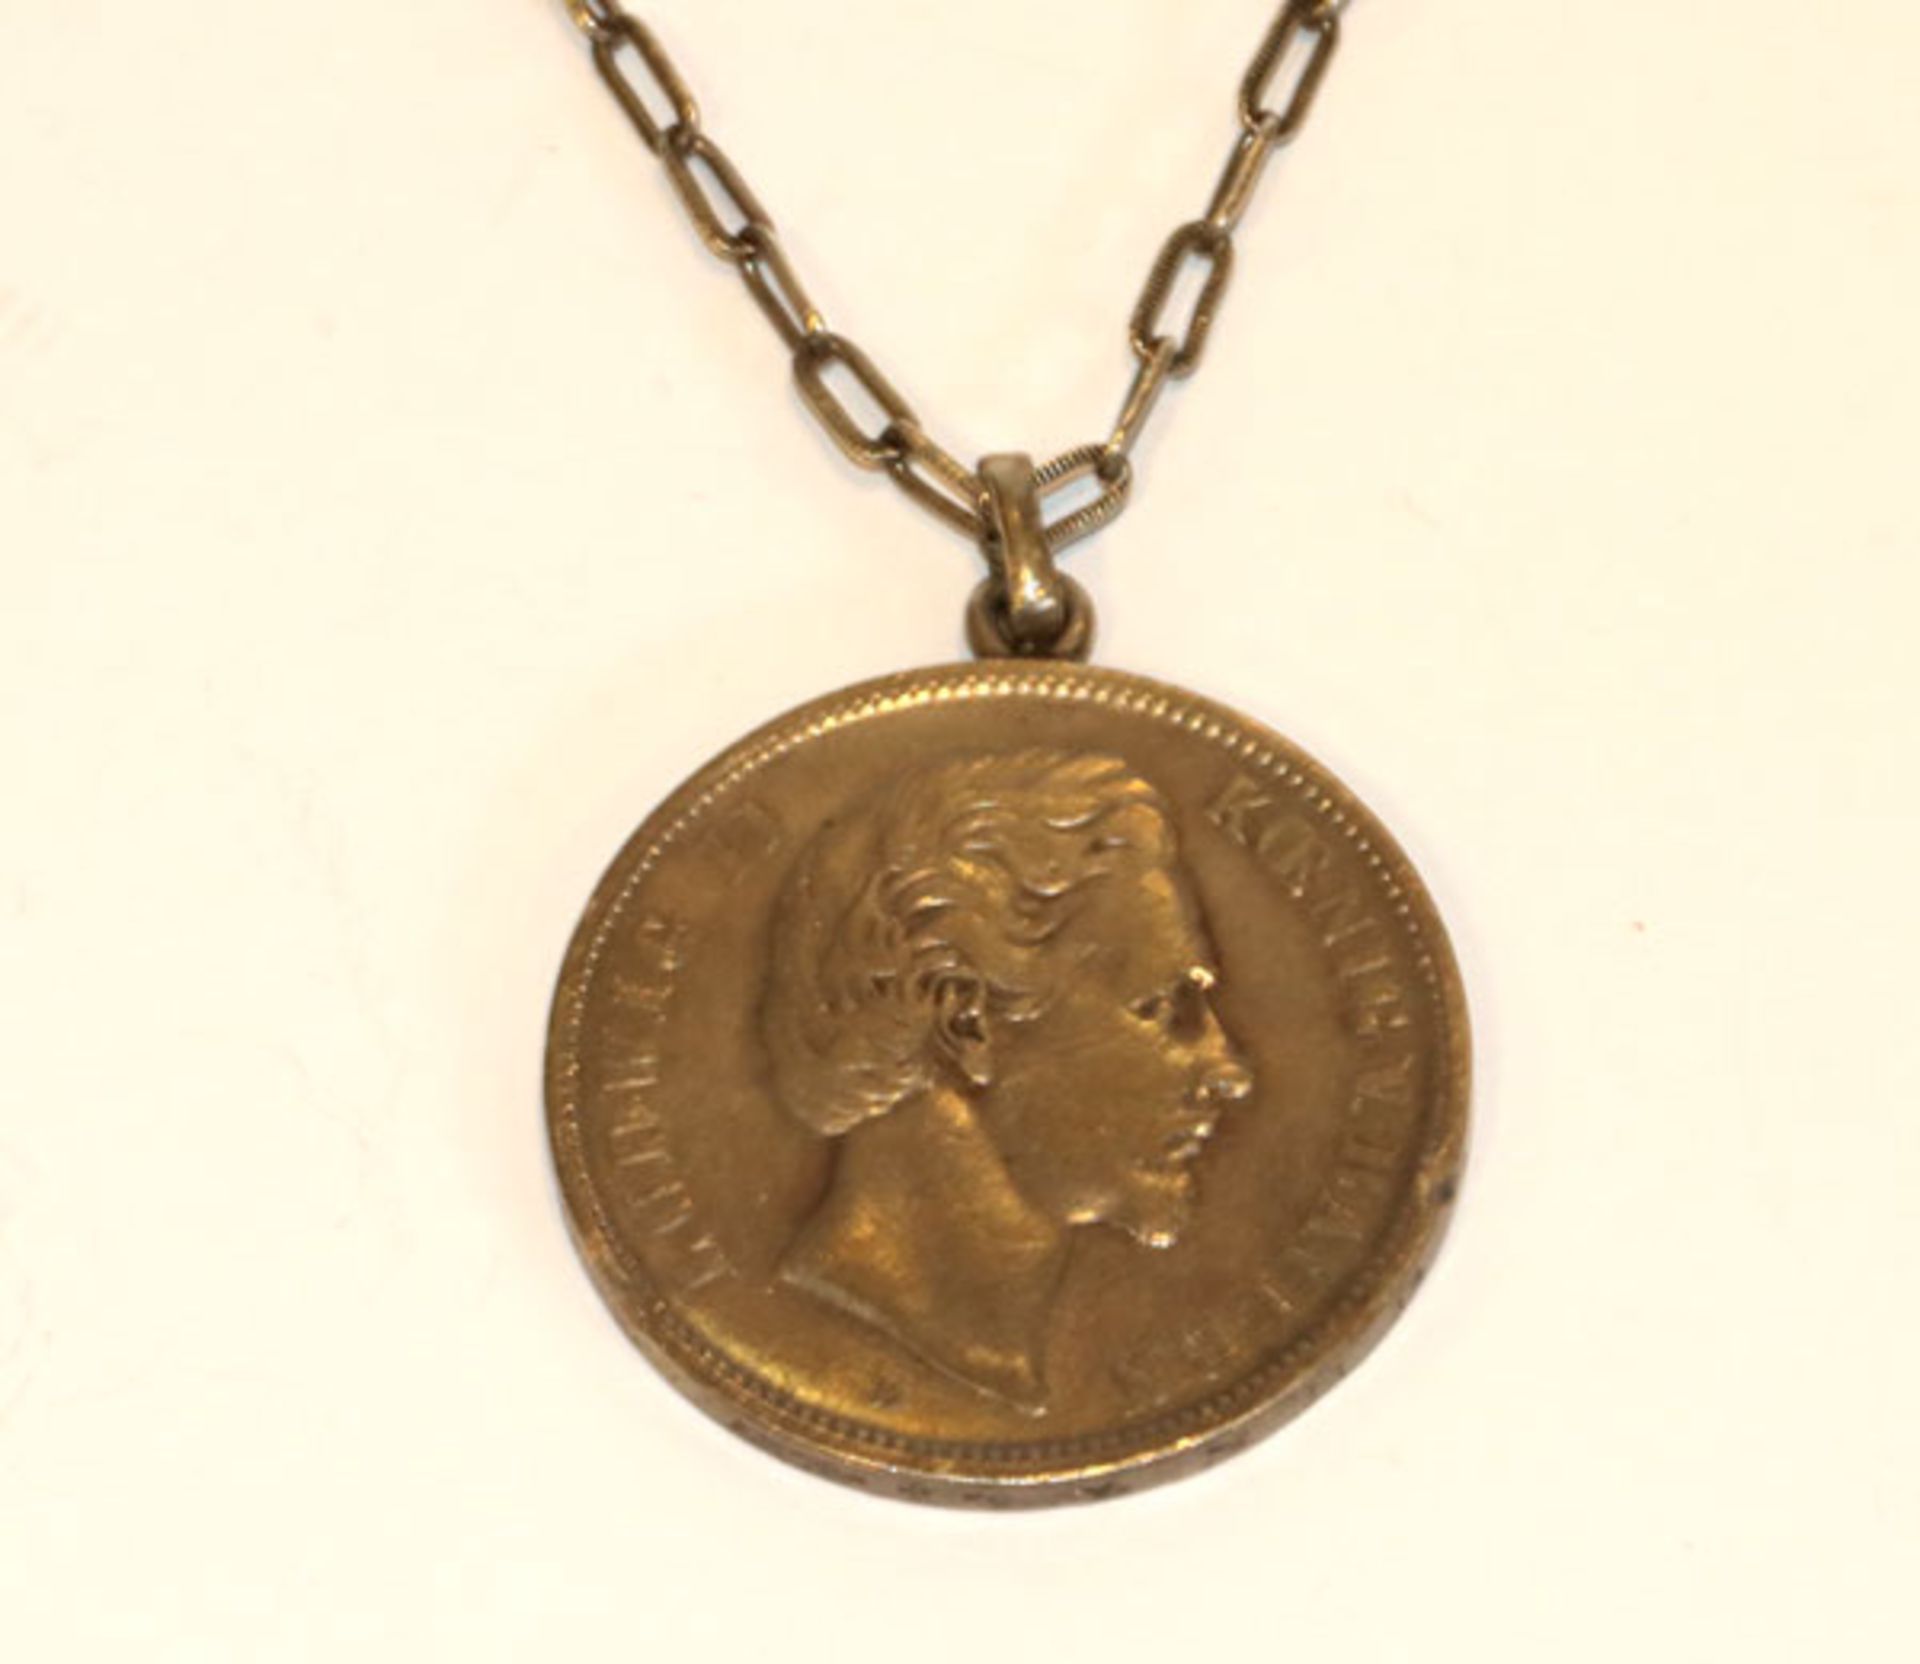 Silber Kette, L 80 cm, mit gehenkelter 5 Mark Münze, Deutsches Reich, König Ludwig II. von Bayern,